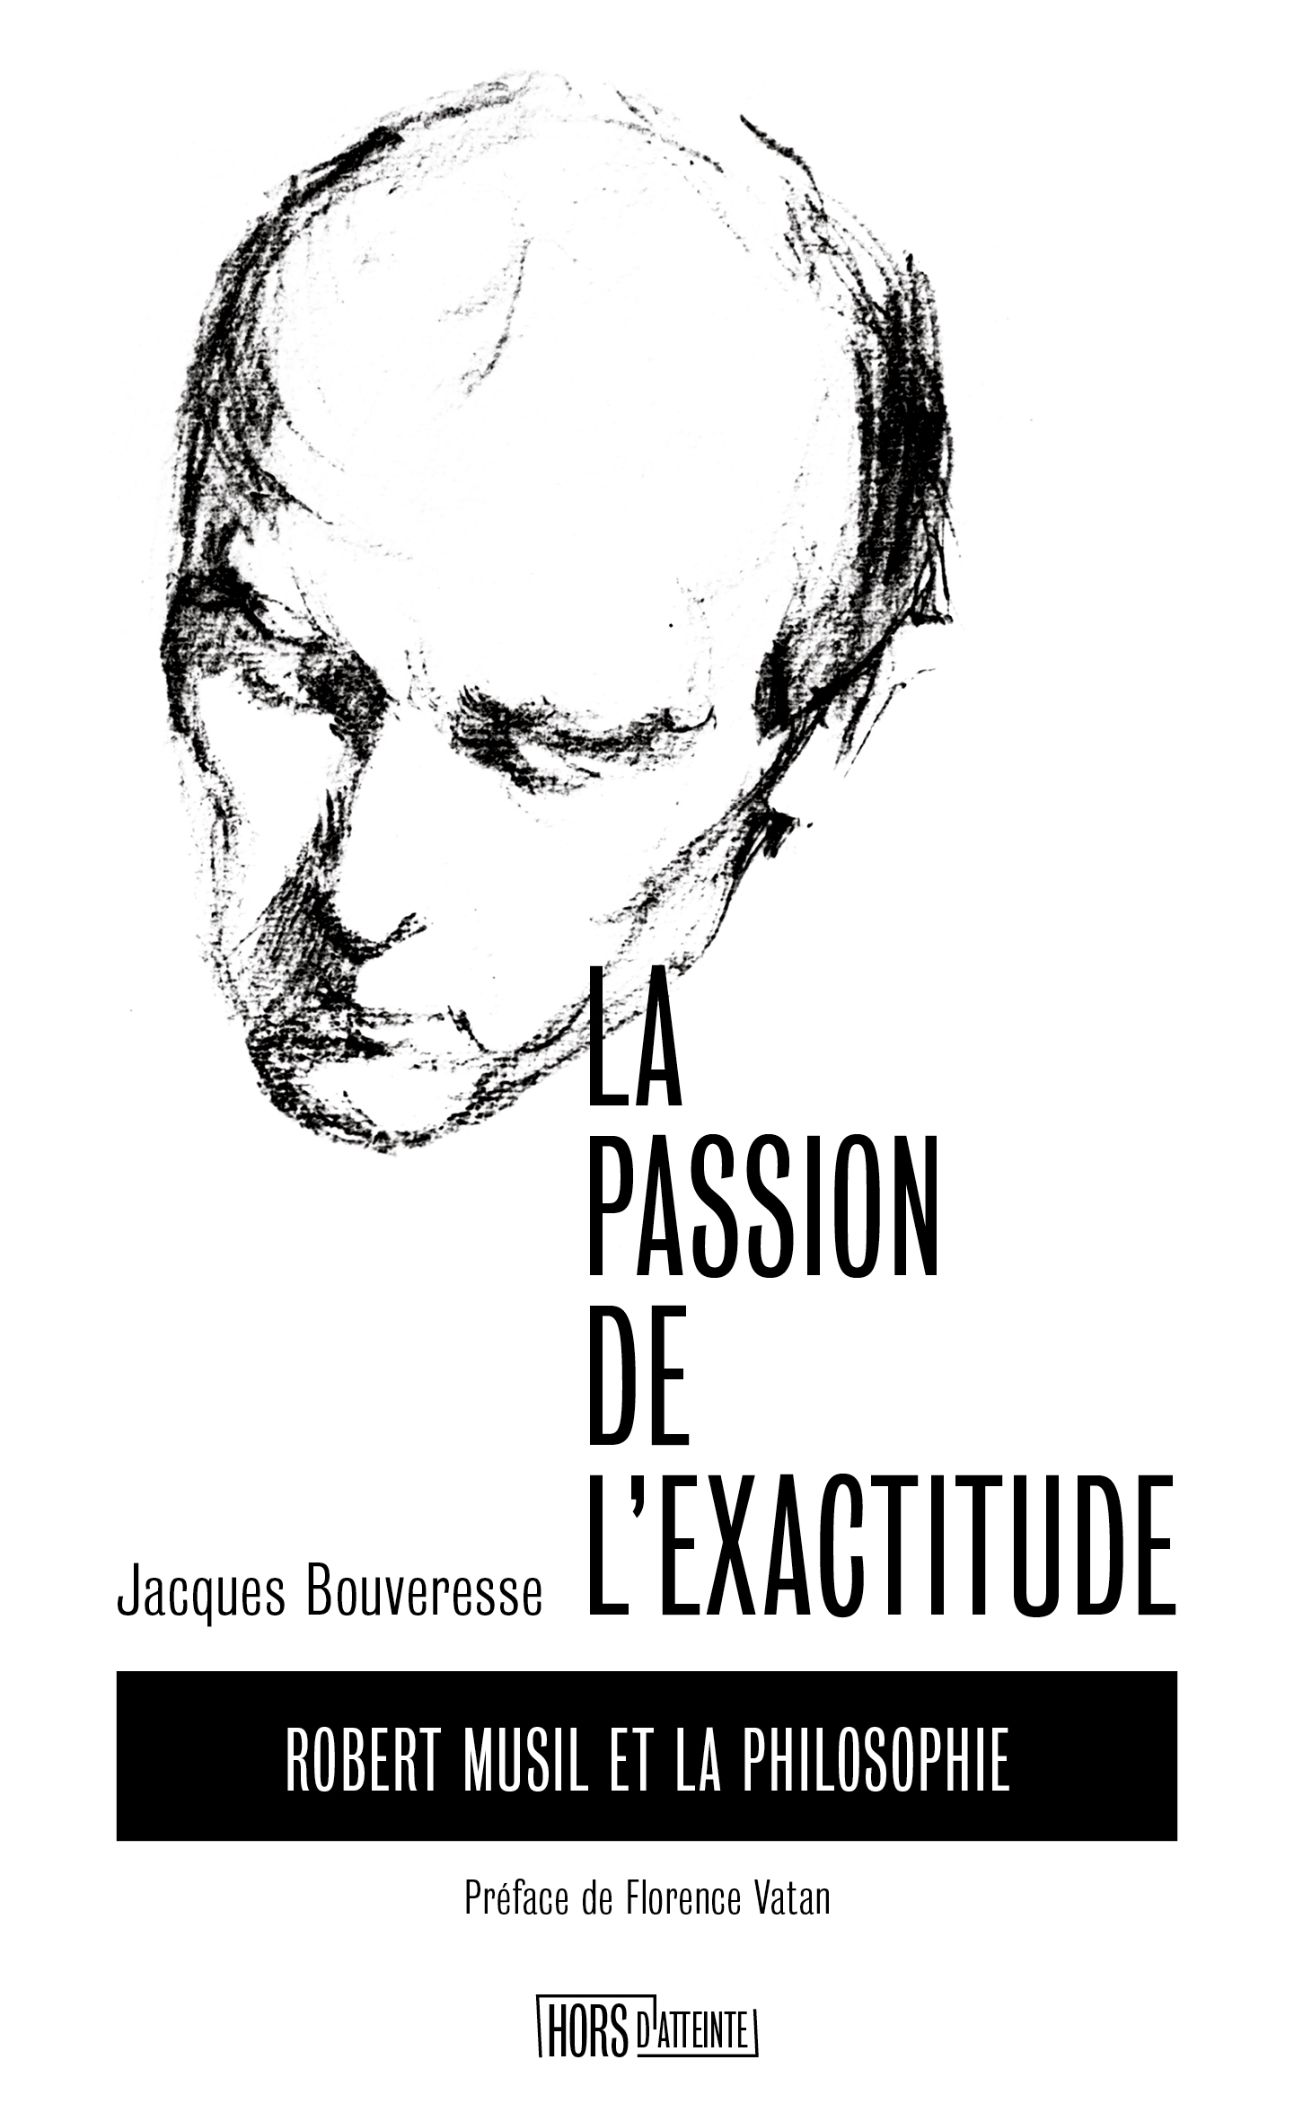 Jacques Bouveresse, La Passion de l'exactitude